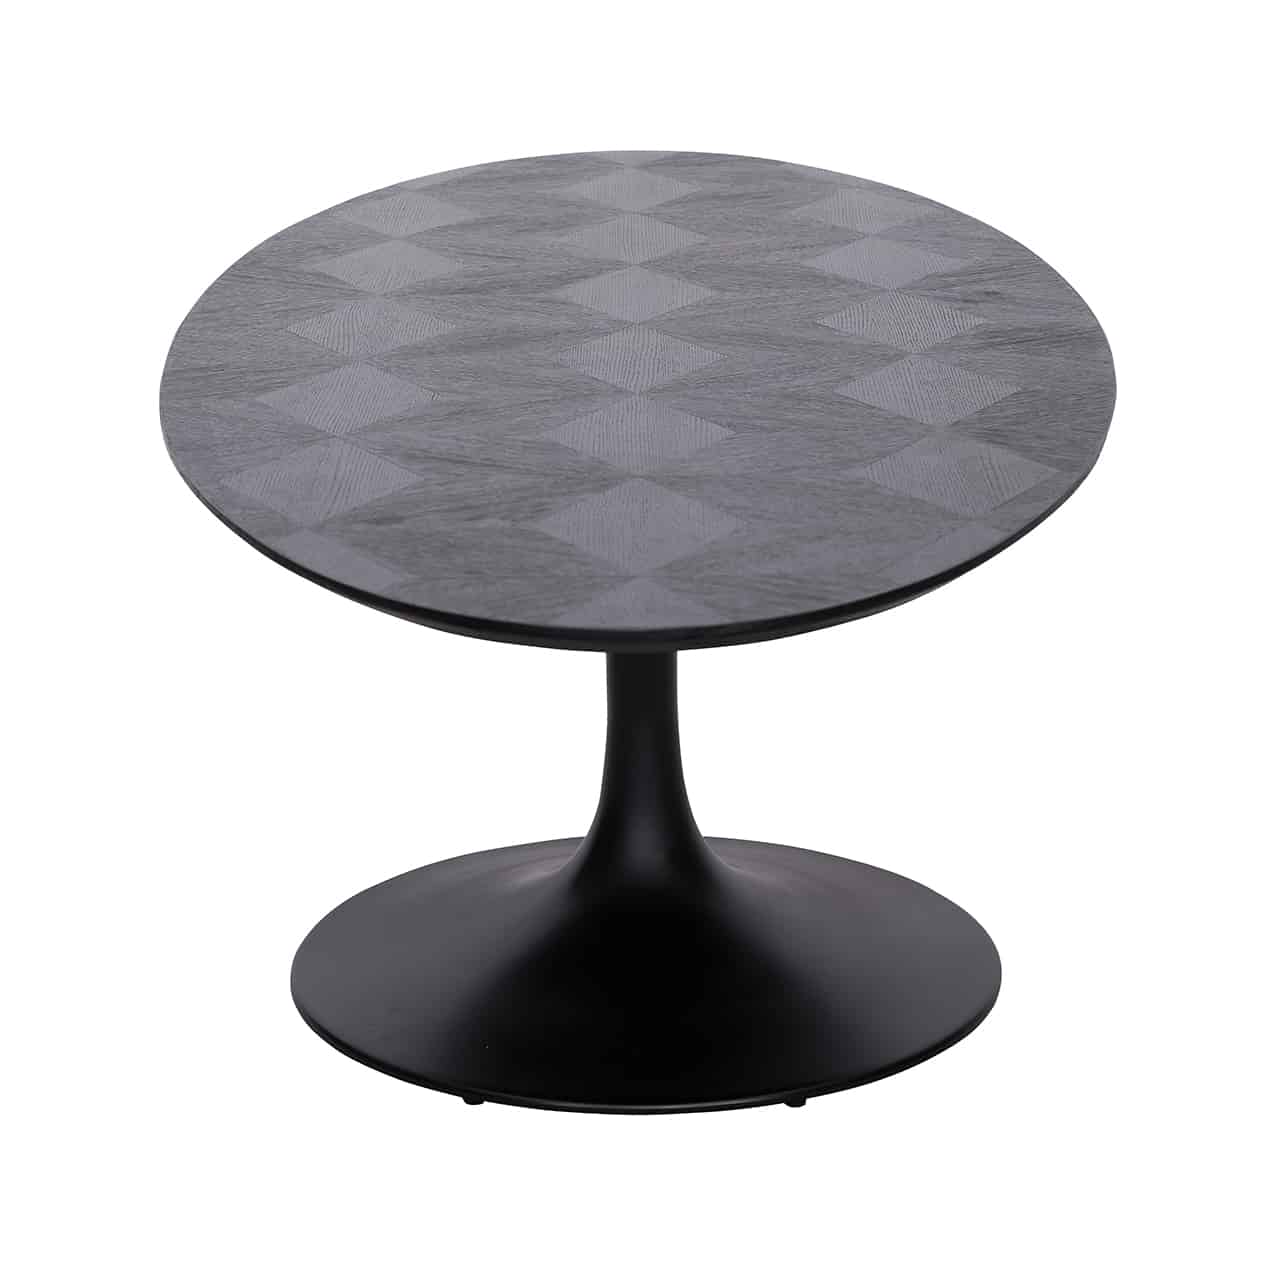 Blax Oval Dining Table 230 - eleganter Esstisch aus Holz und Metall in Schwarz für stilvolles Essen